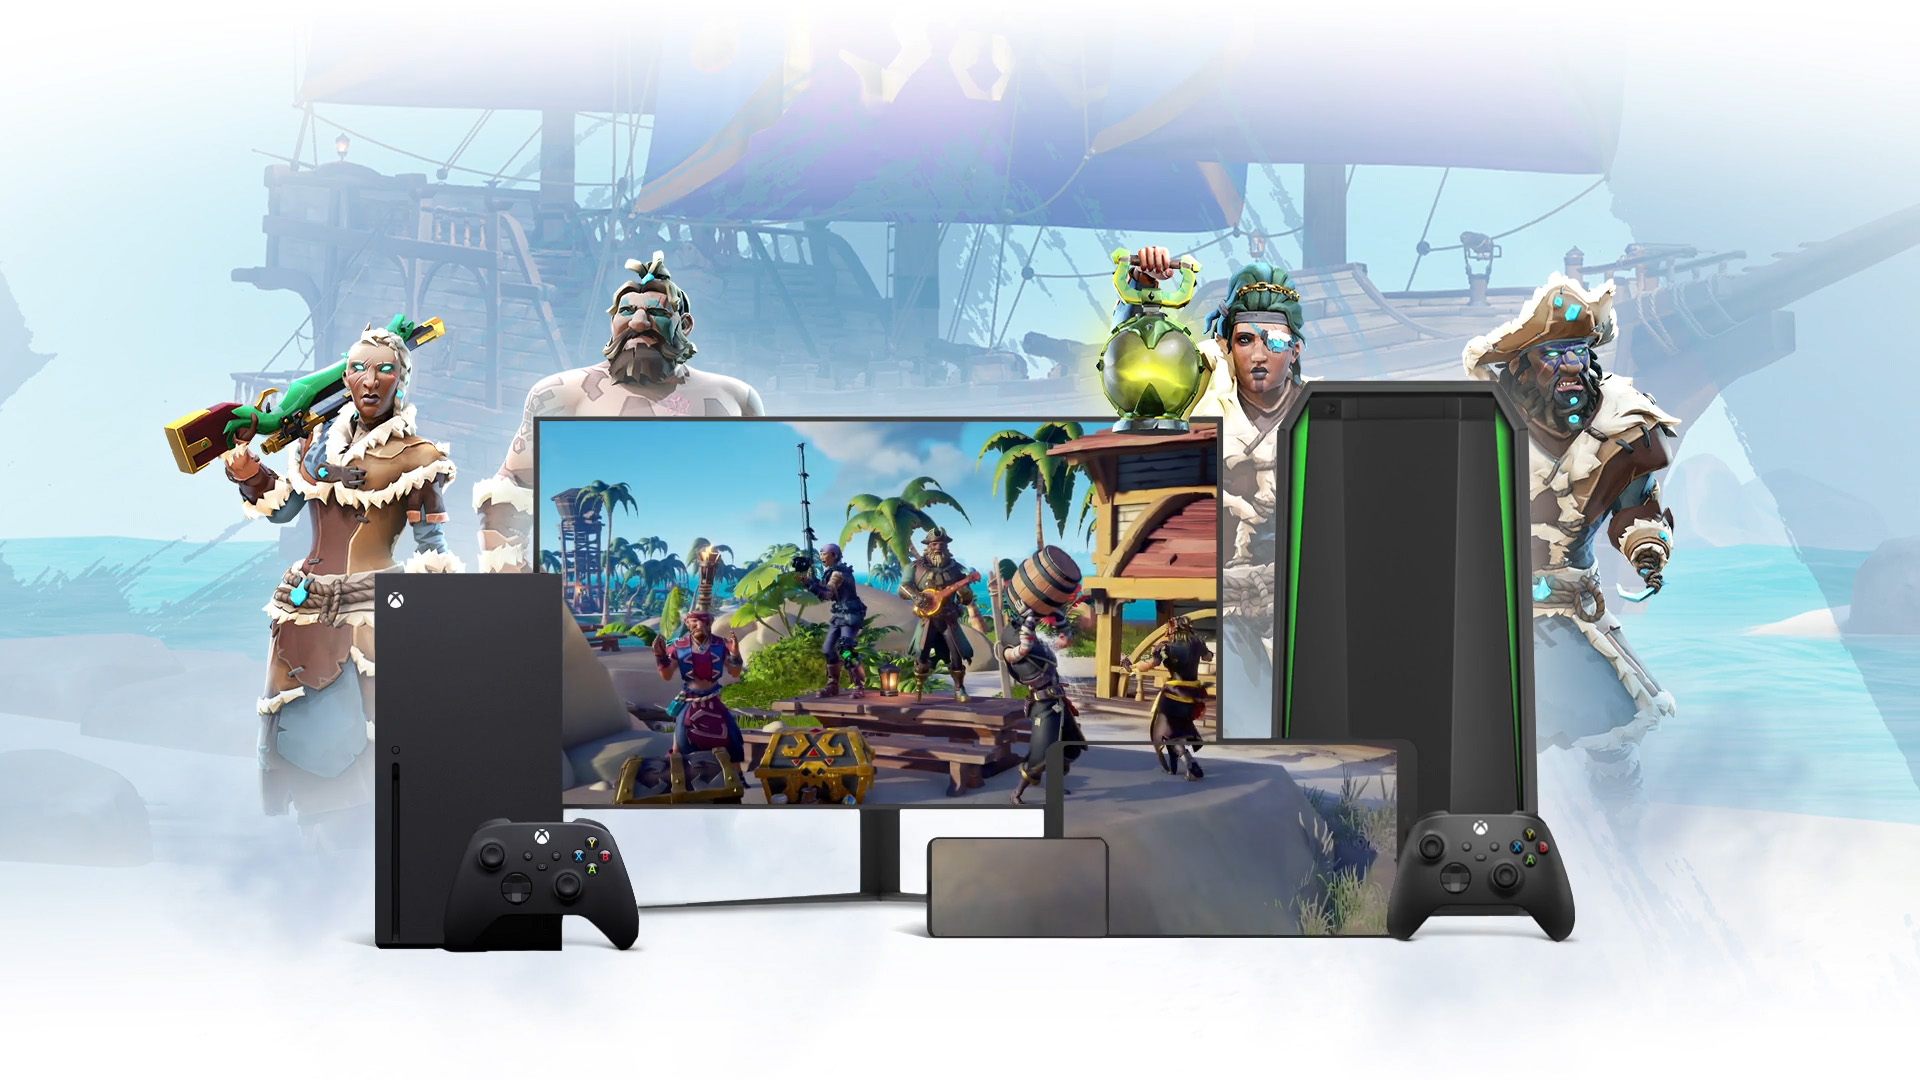 Fondo de un barco pirata con personajes de Sea of Thieves rodeando un ordenador portátil, un televisor y un dispositivo móvil.